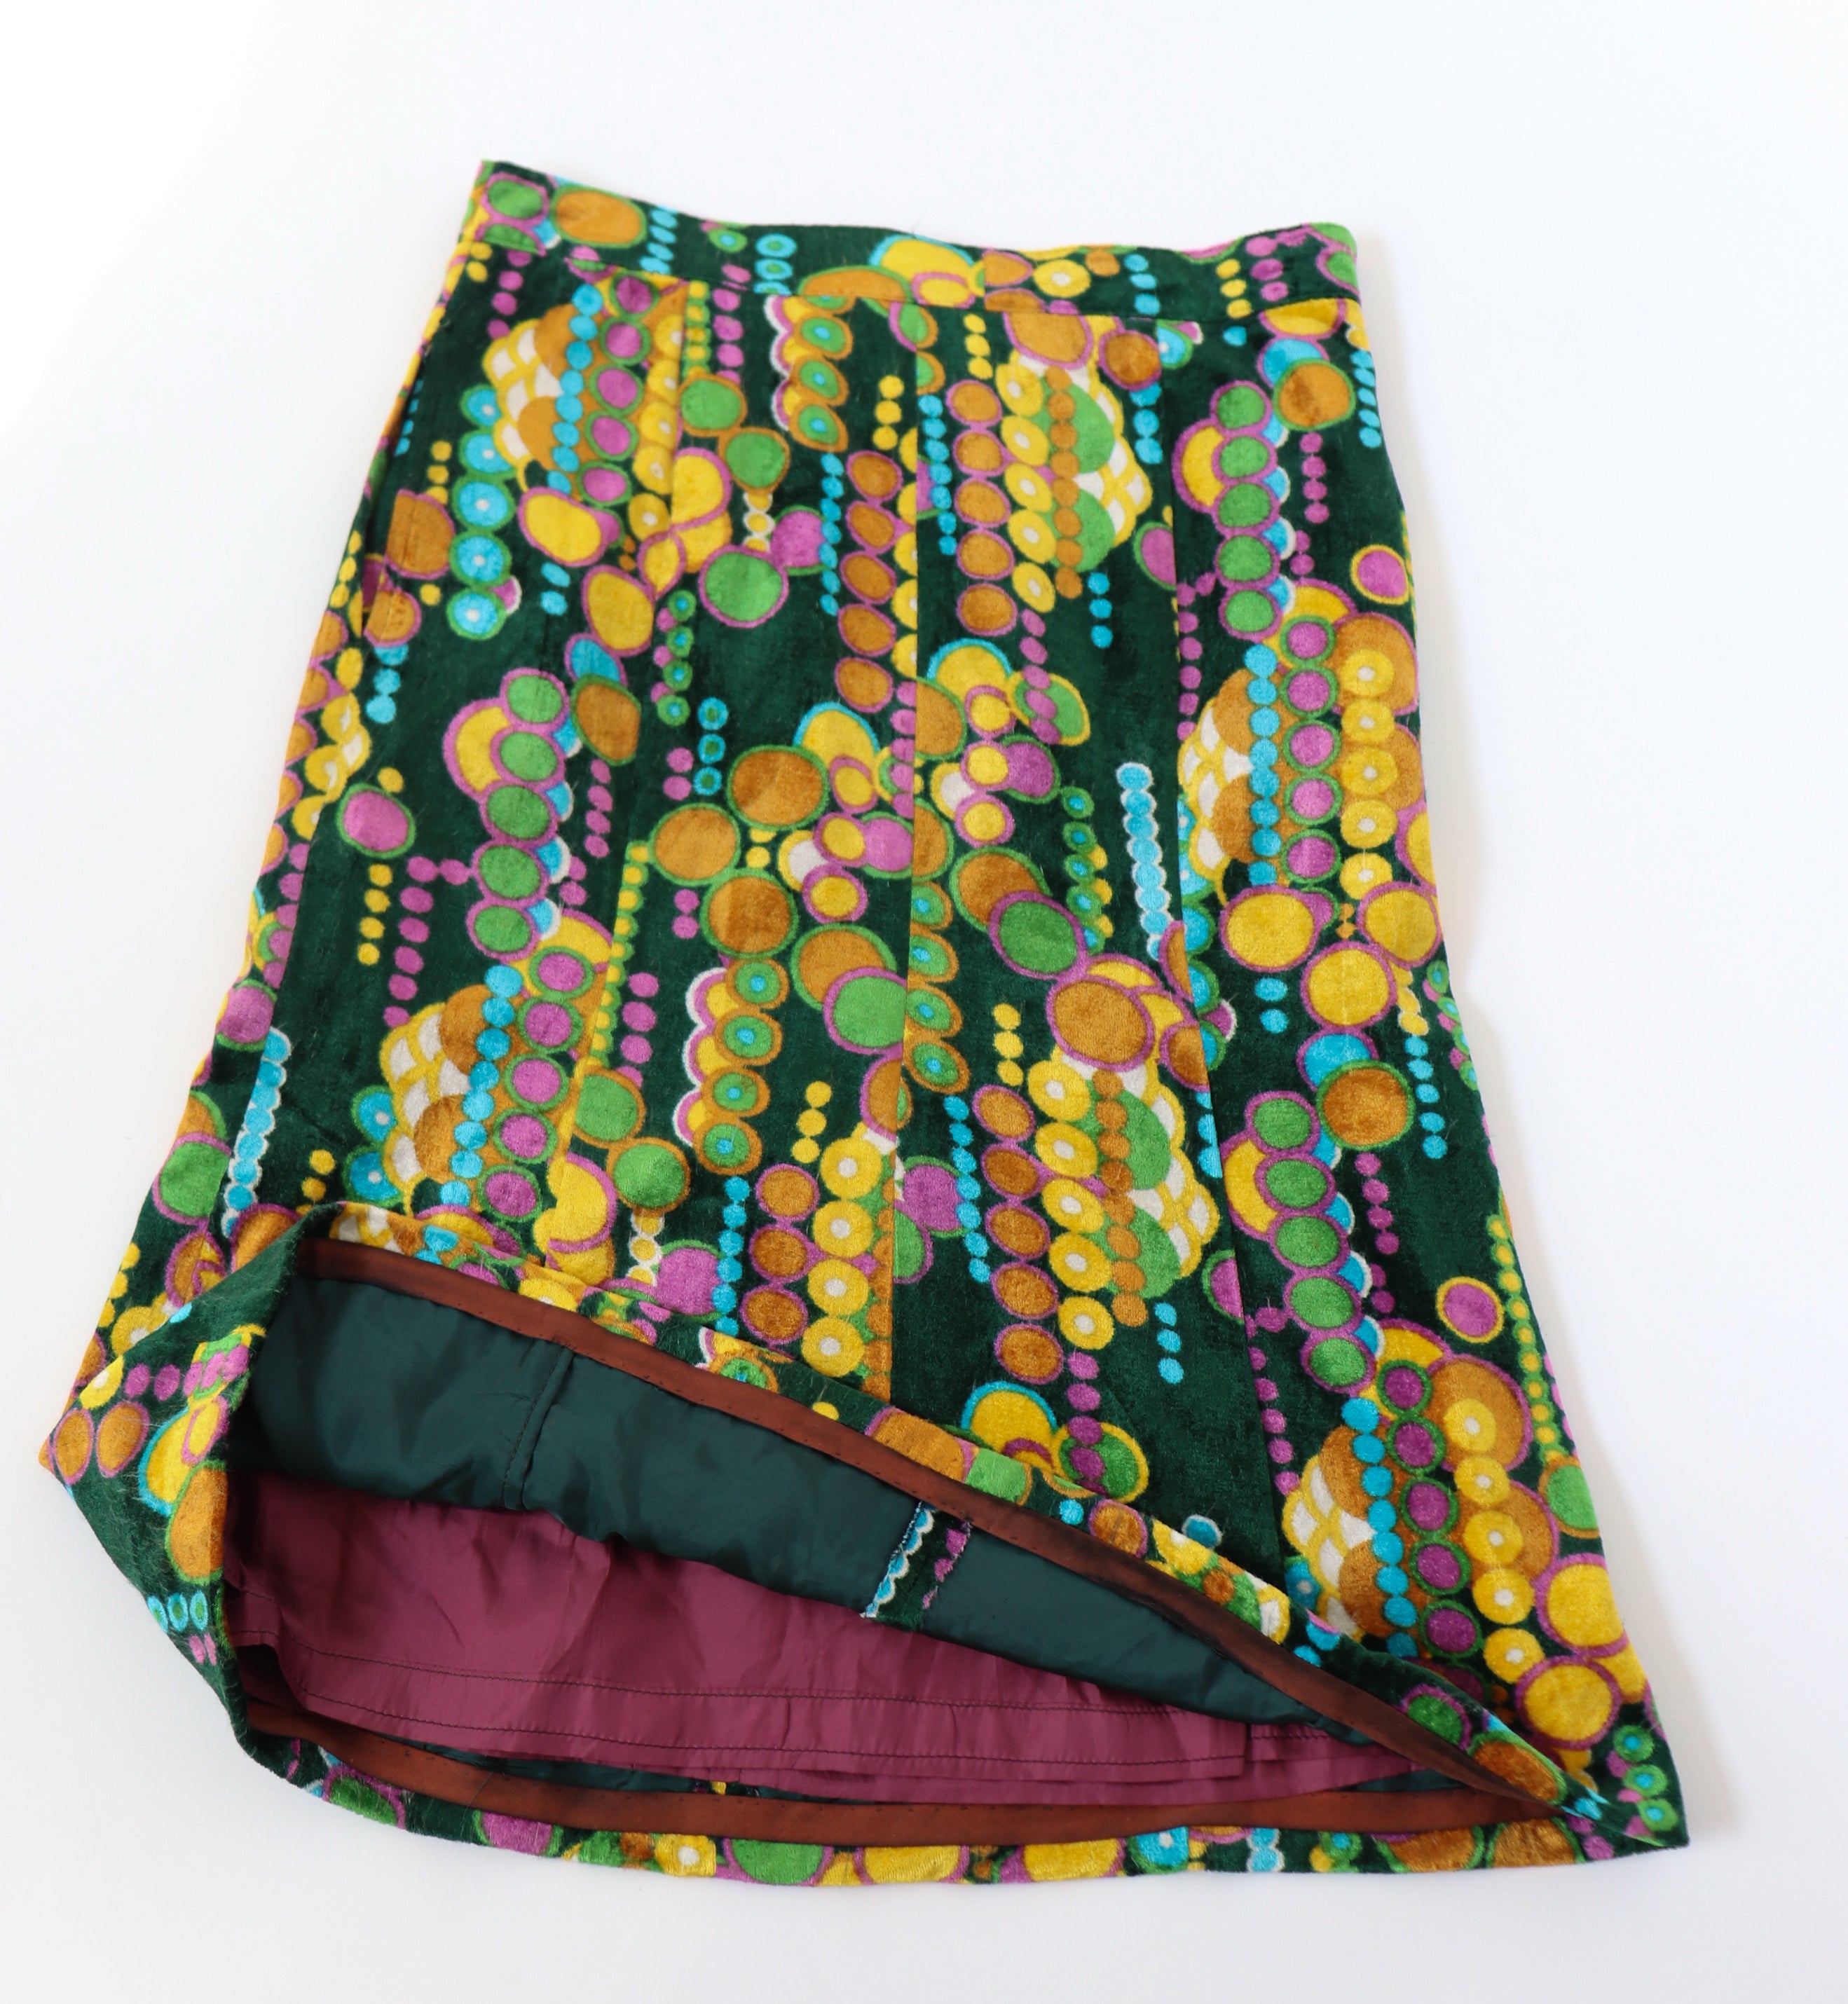 1970s Psychedelic Skirt - Velour - Green / Multicolours - S / UK 10